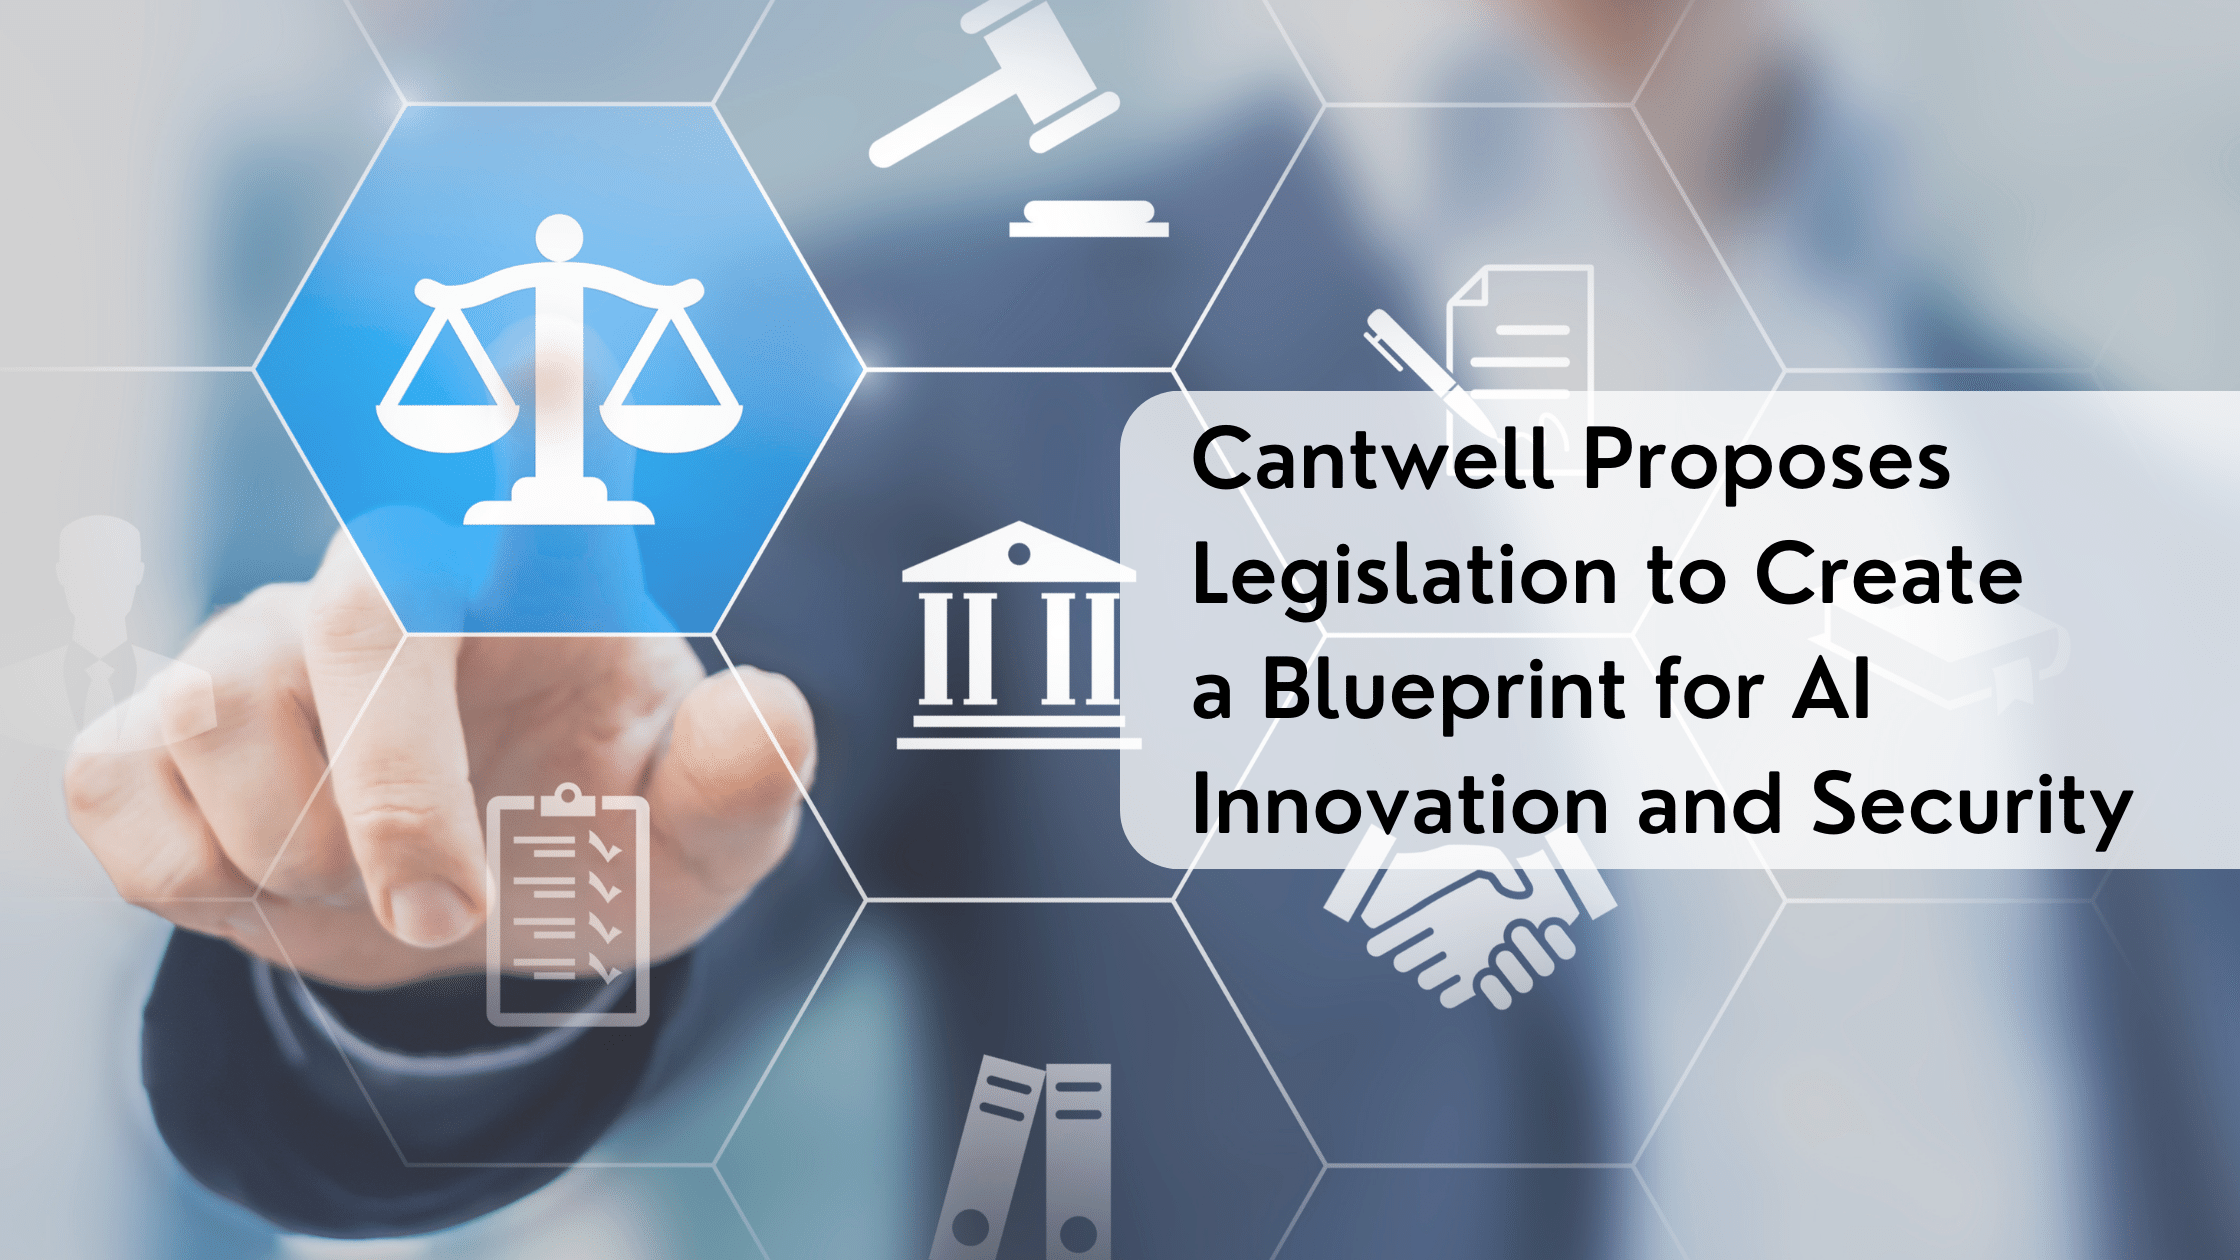 Maria Cantwell Proposes AI Legislation